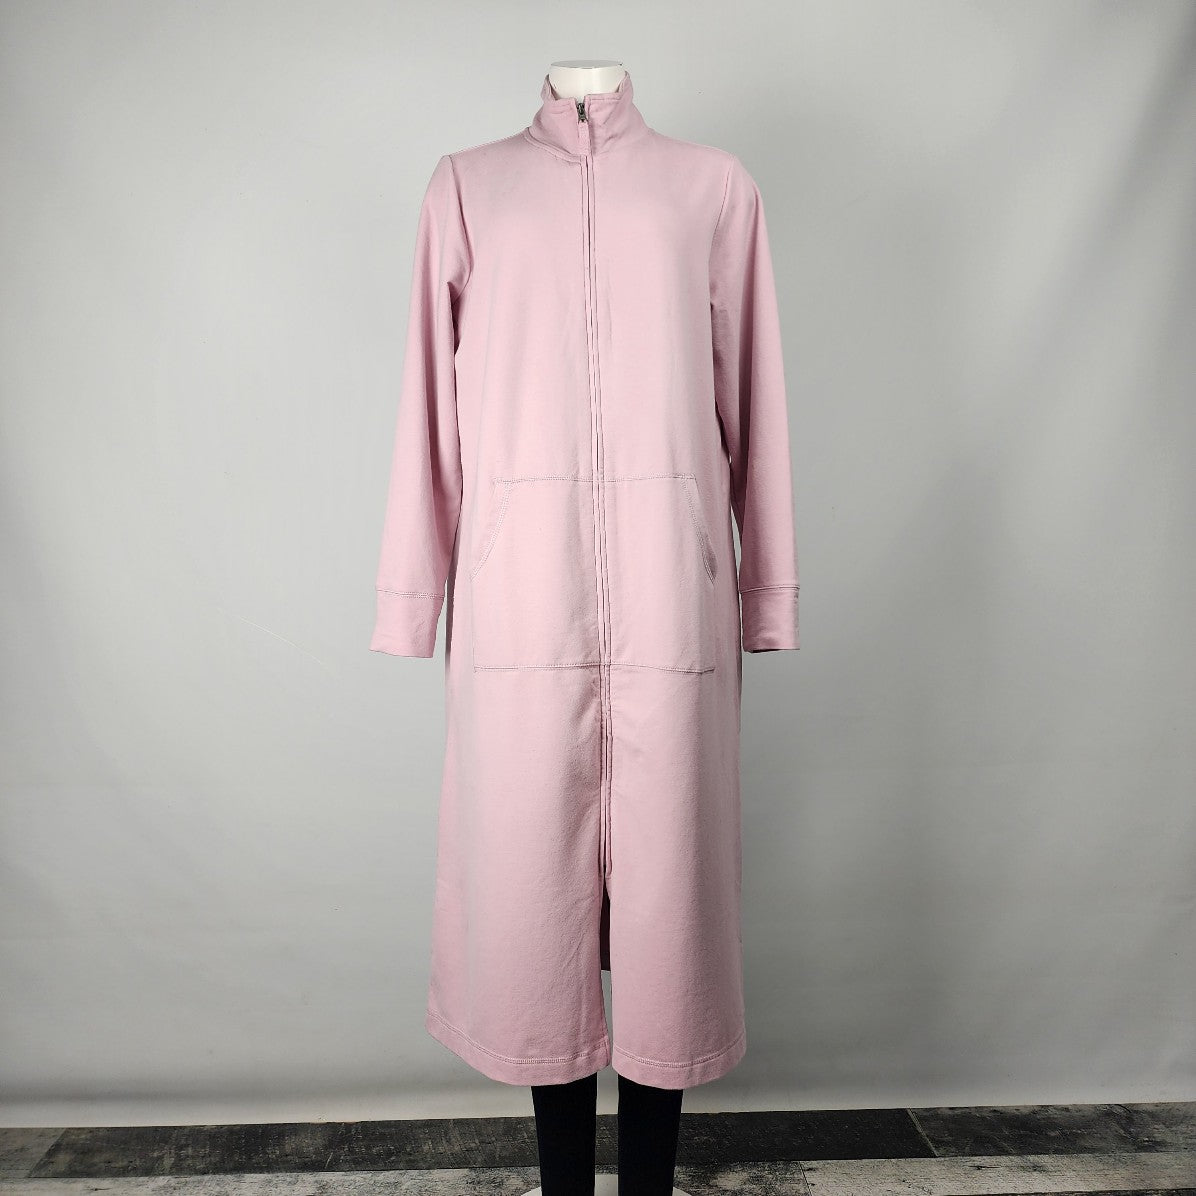 L.L. Bean Pink Cotton Zip Up Long Jacket Size S/M